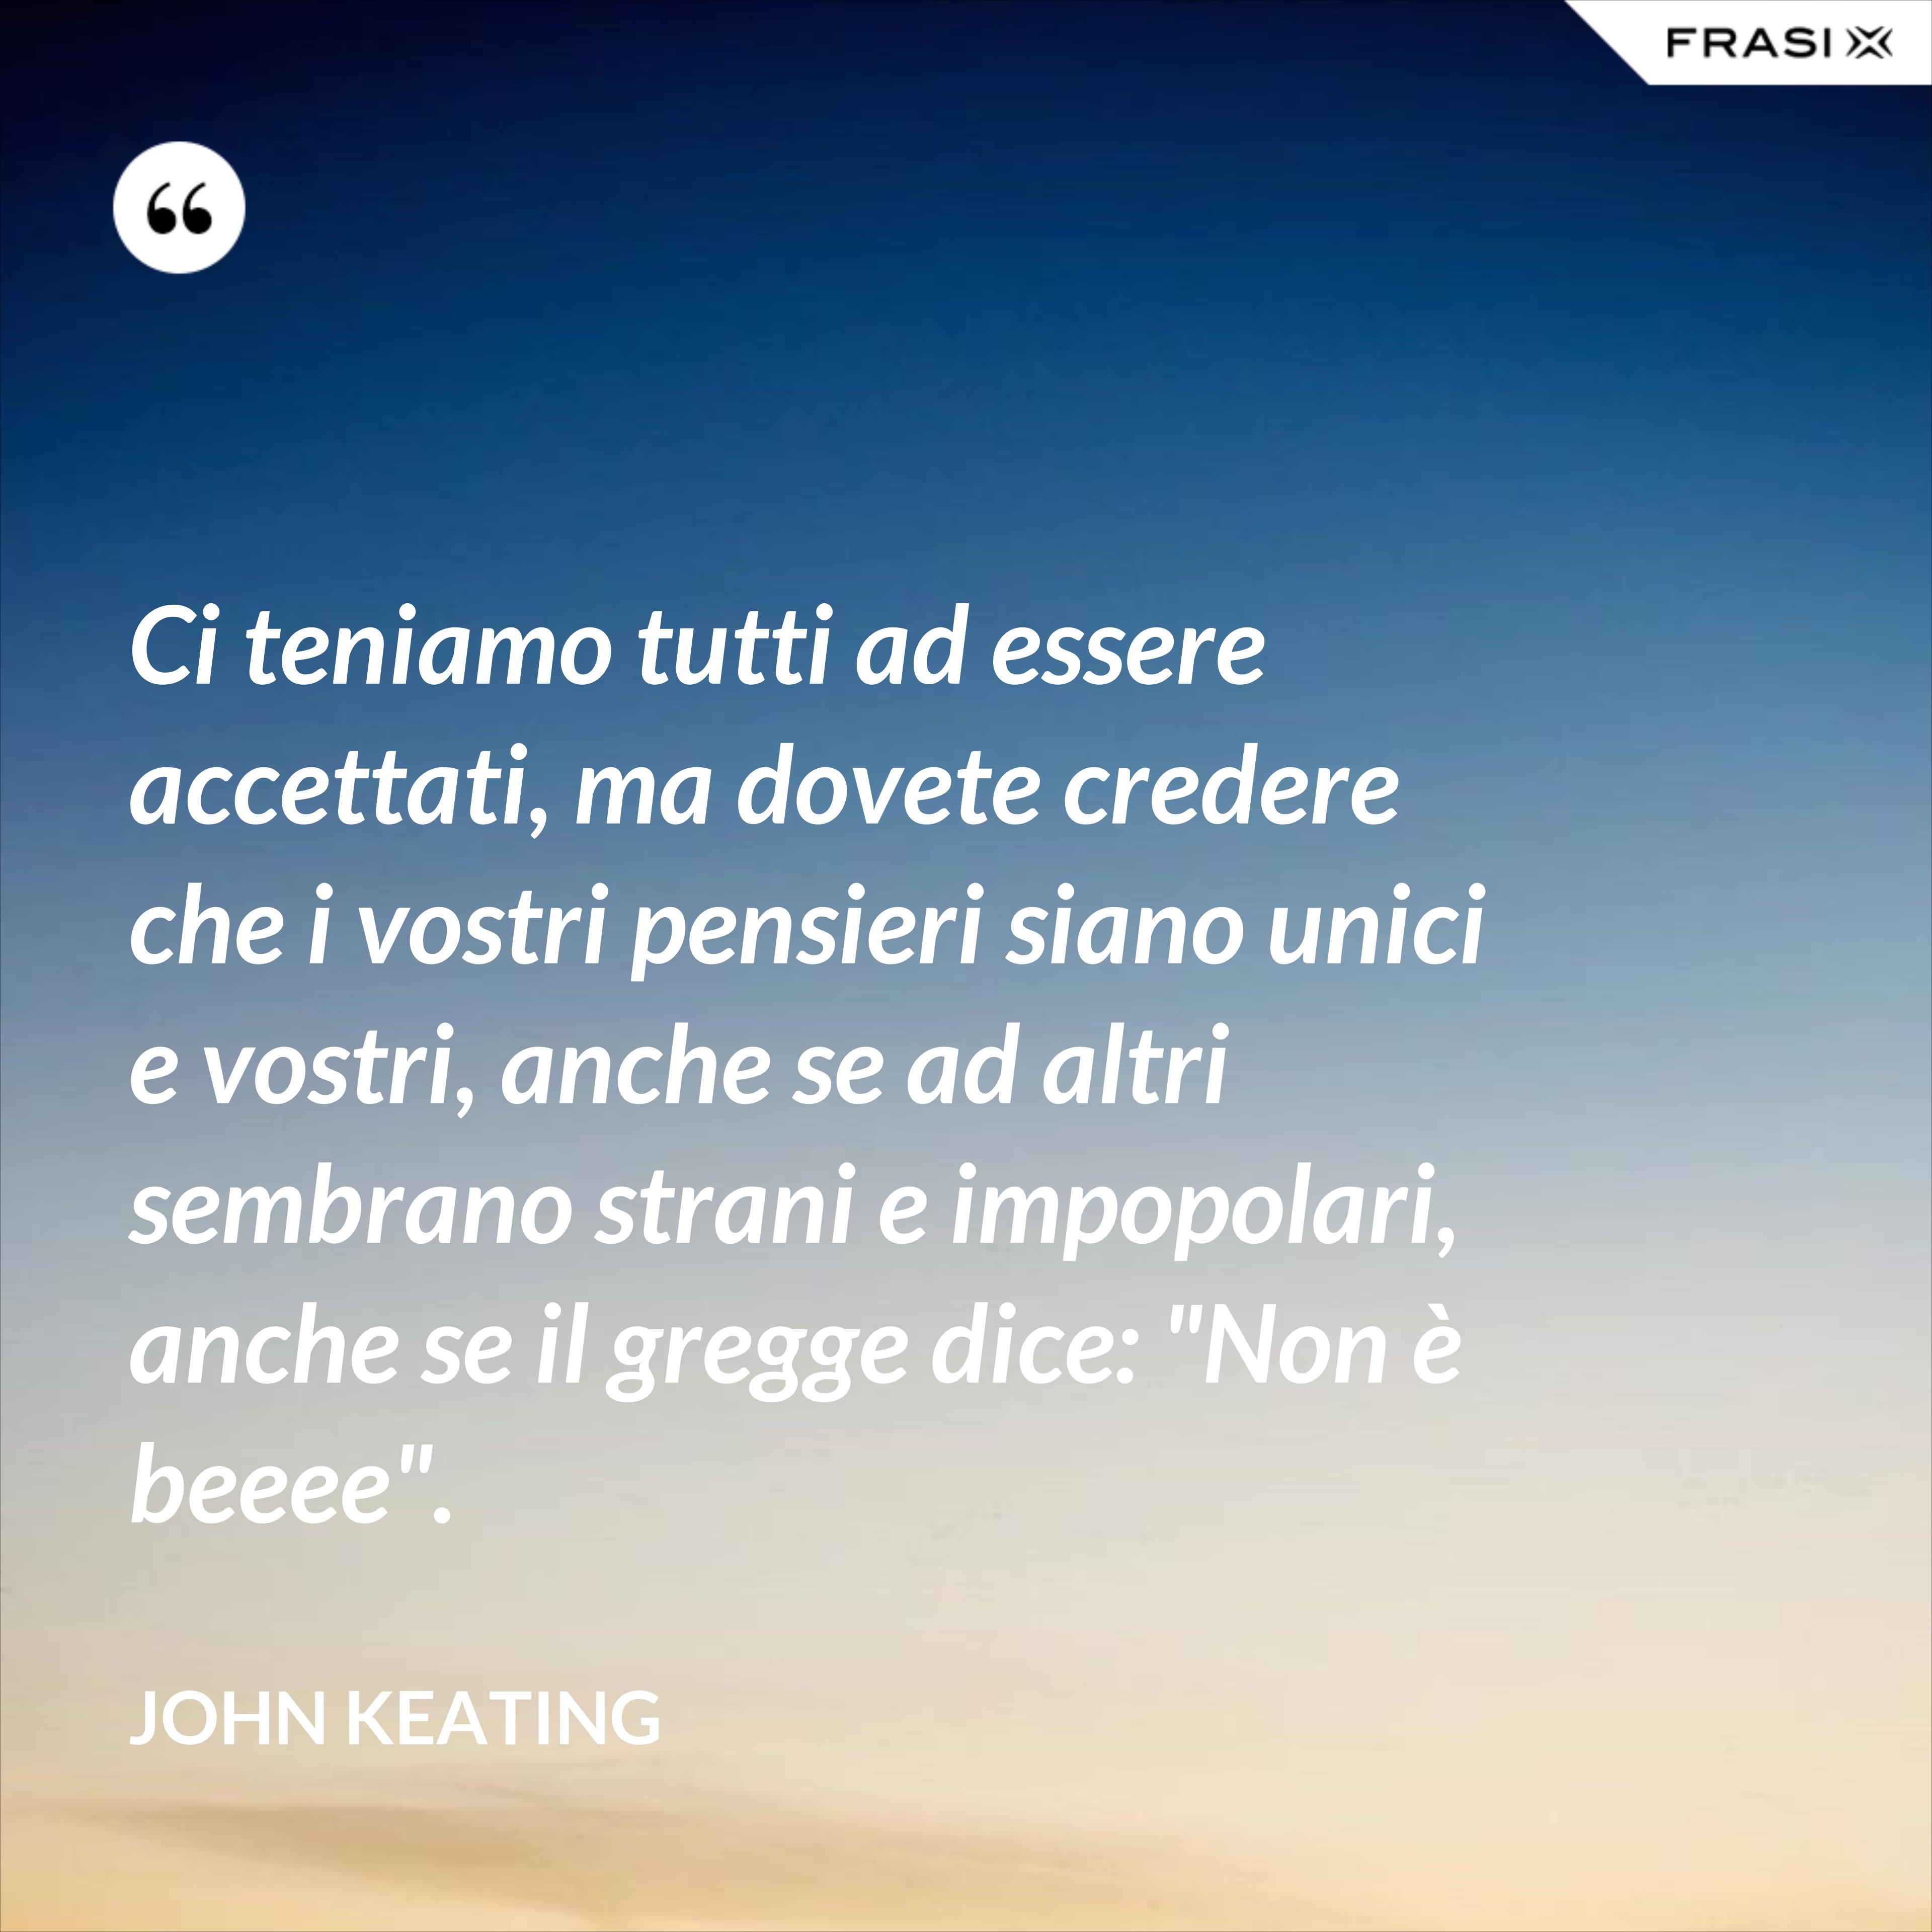 Ci teniamo tutti ad essere accettati, ma dovete credere che i vostri pensieri siano unici e vostri, anche se ad altri sembrano strani e impopolari, anche se il gregge dice: "Non è beeee". - John Keating